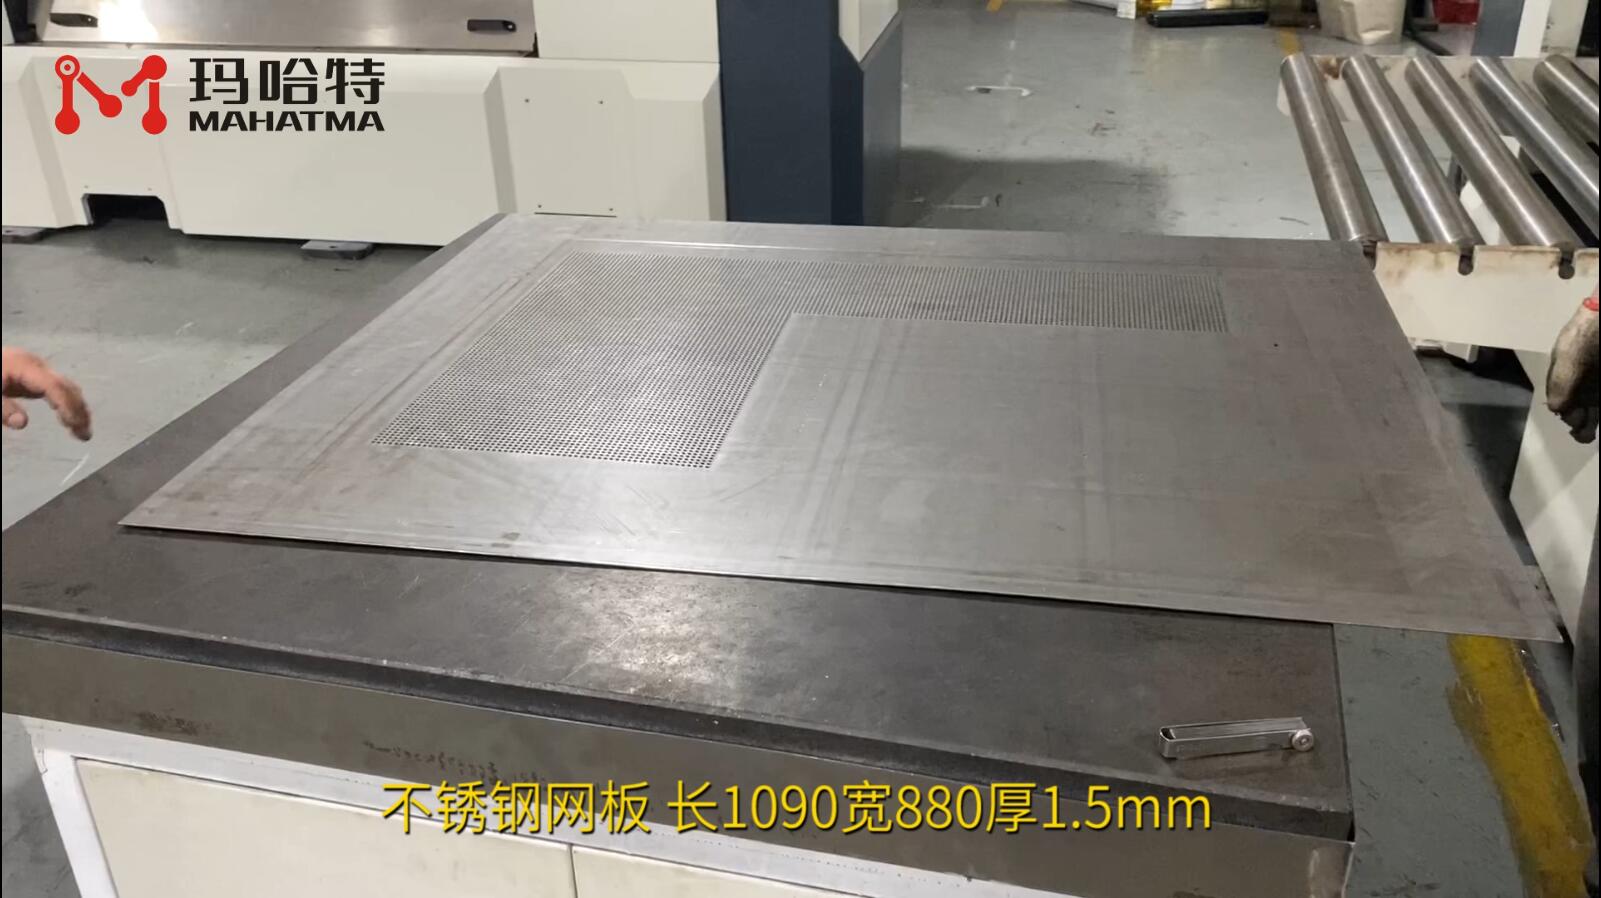 不锈钢网板 MHT50-1700 长方形 长1090宽880厚1.5mm